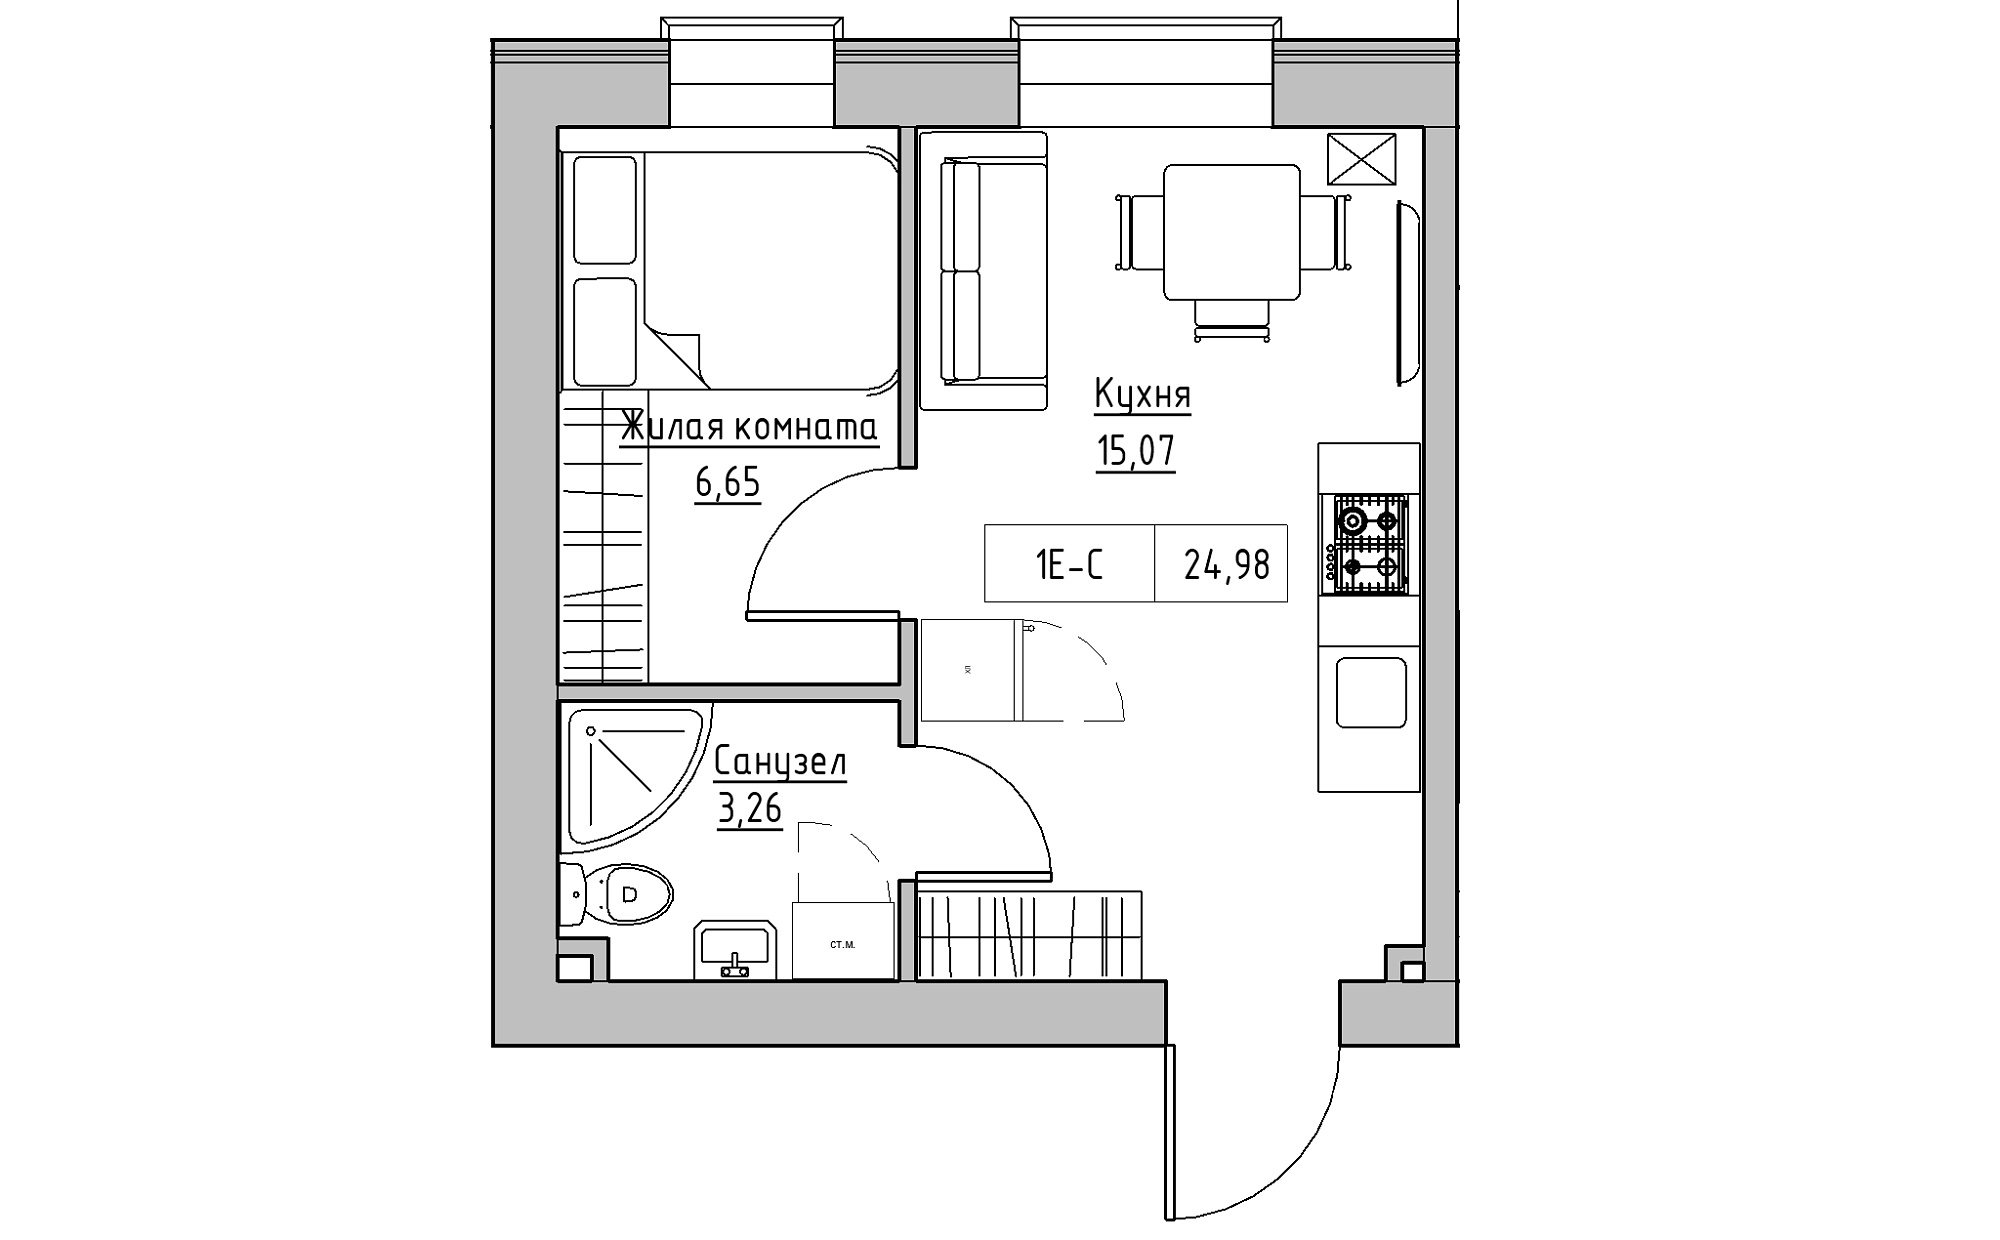 Планування 1-к квартира площею 24.98м2, KS-022-02/0004.